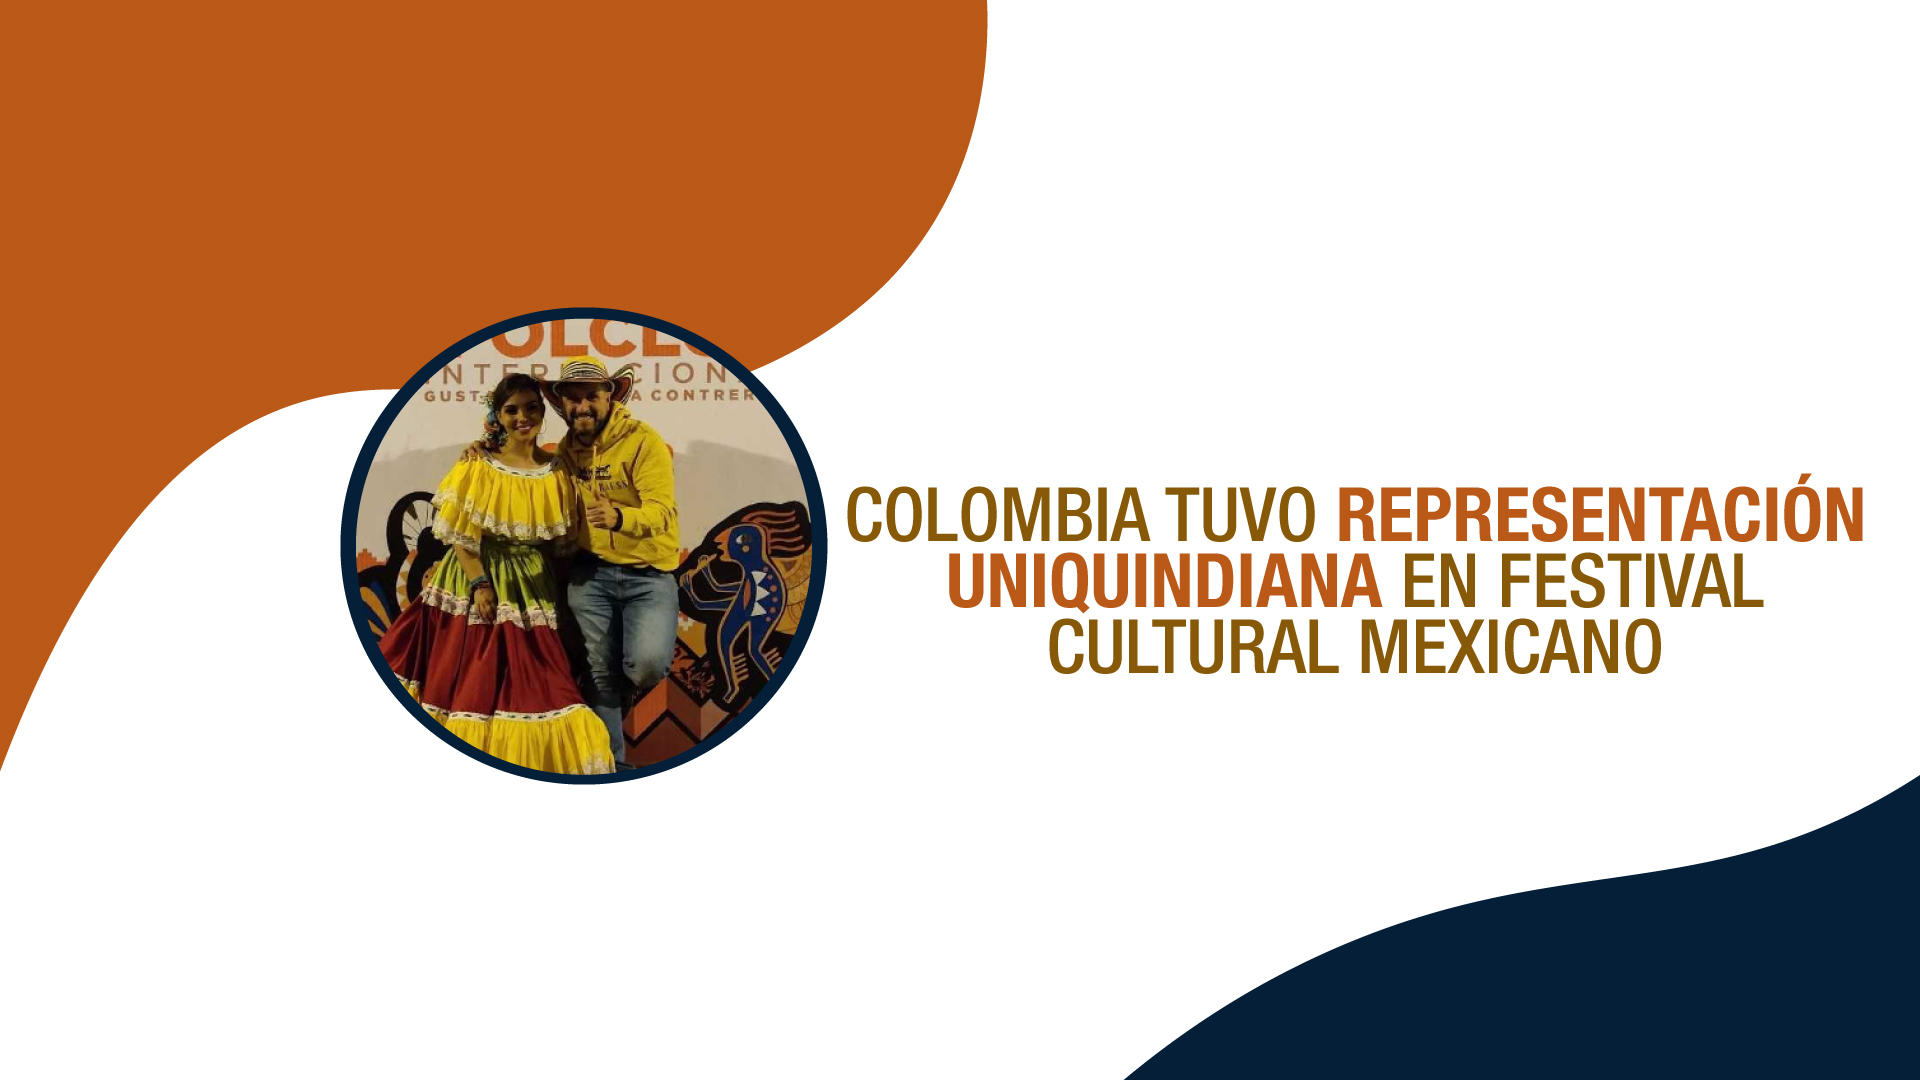 Colombia tuvo representación uniquindiana en festival cultural mexicano